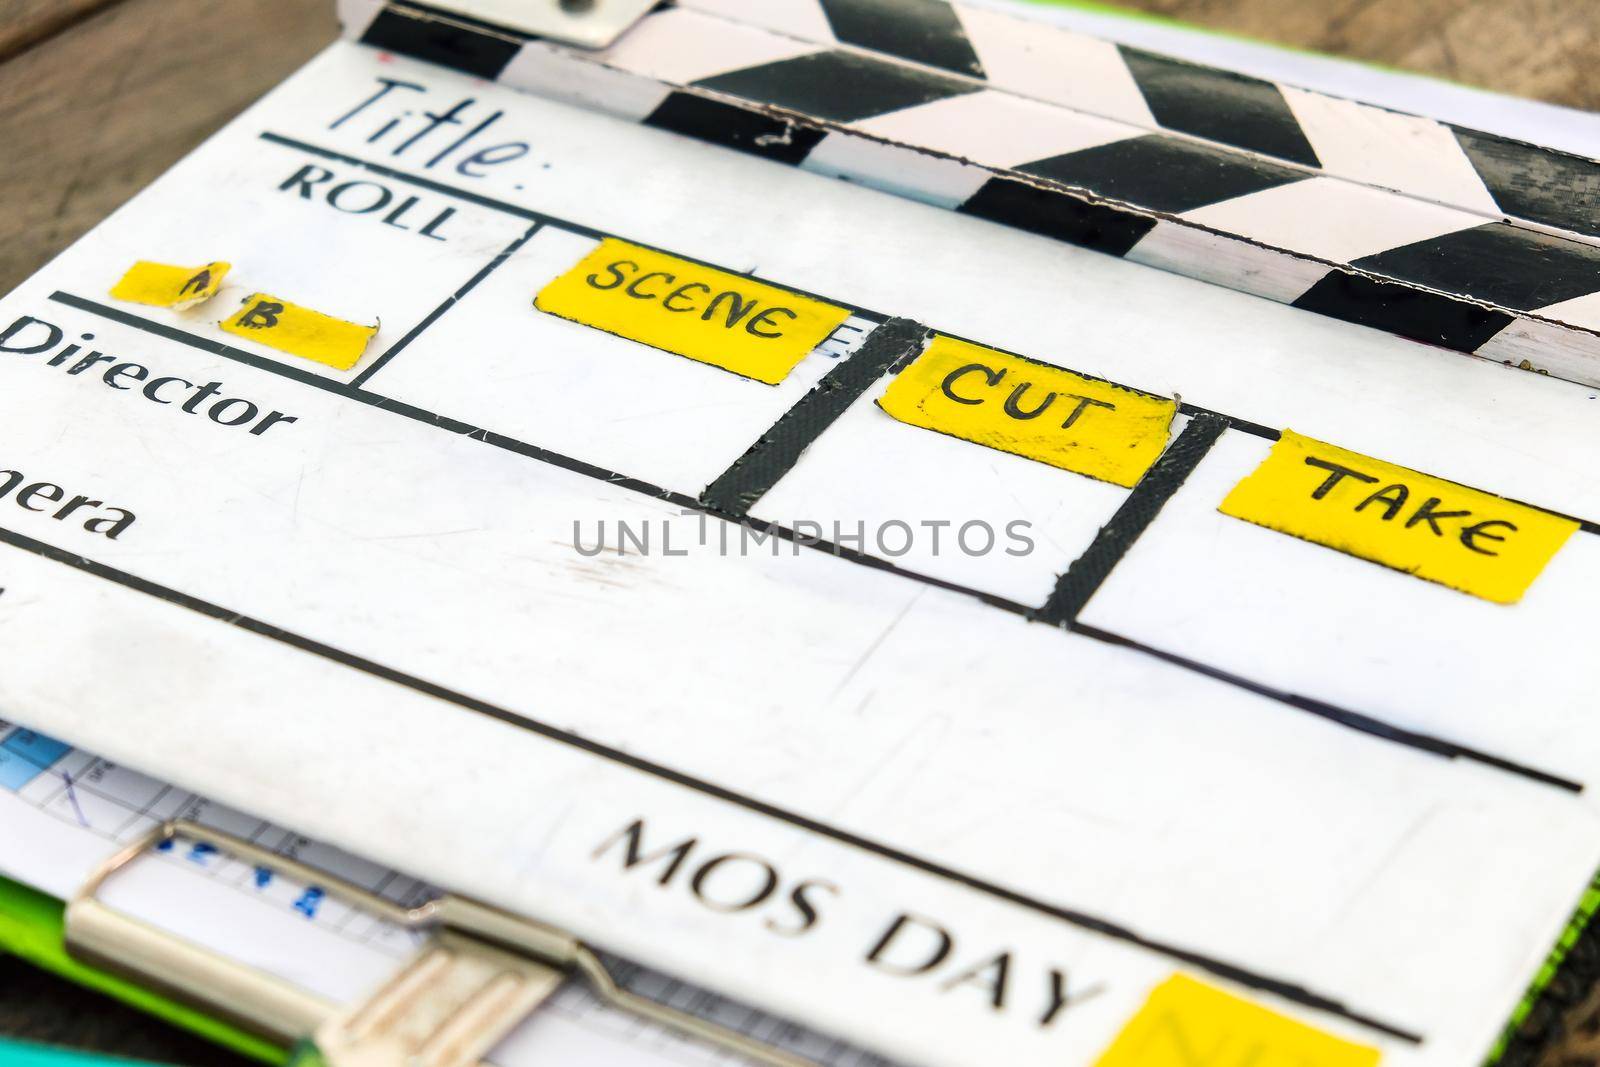 behind the scene, Film Slate on set